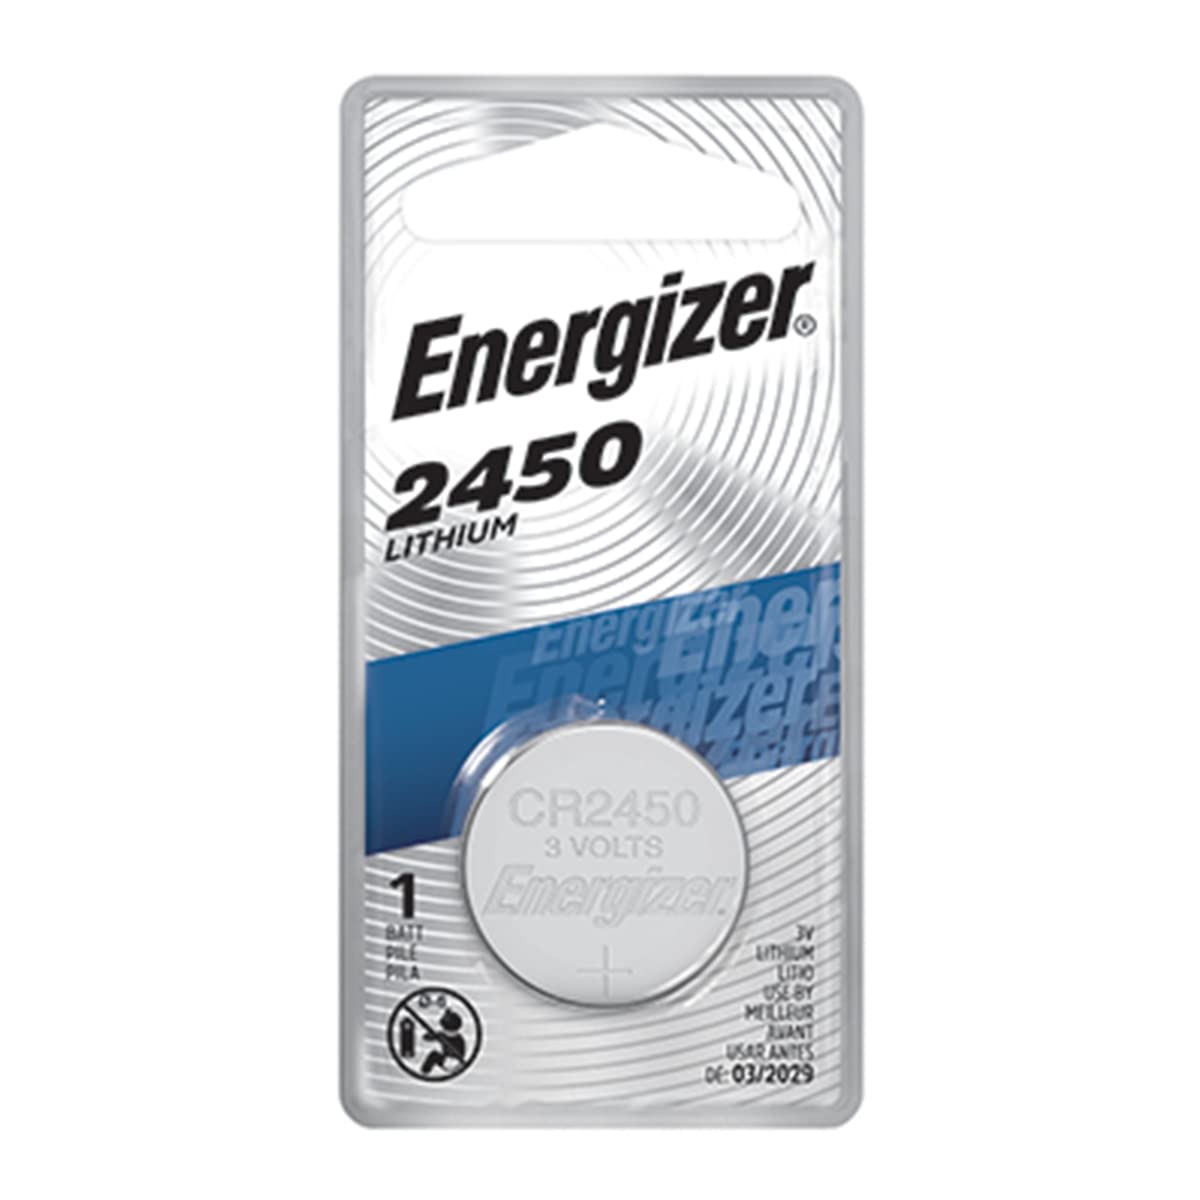 Energizer CR2450 Lithium Battery, 3v ECR2450, 12 PK